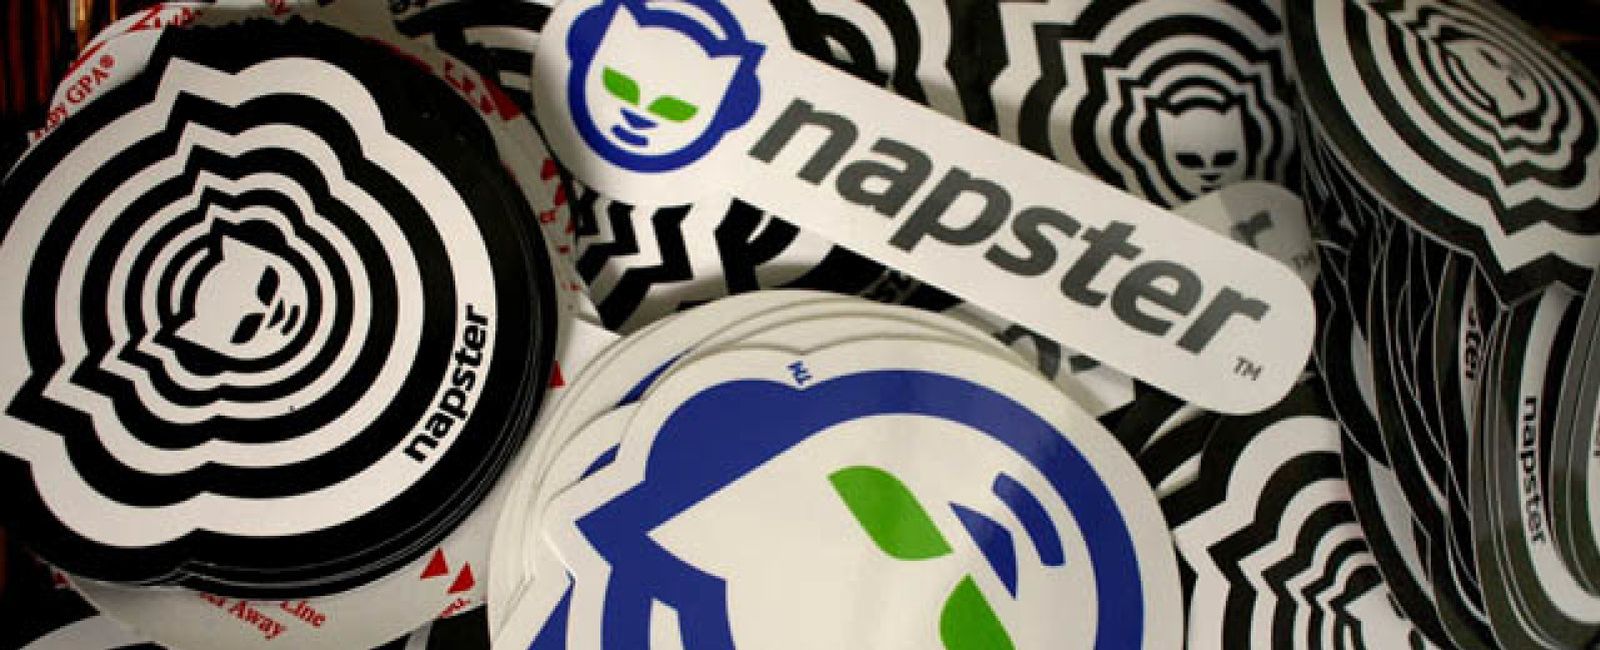 Foto: Napster, el regreso: el legendario 'software' se reinventa al estilo Spotify